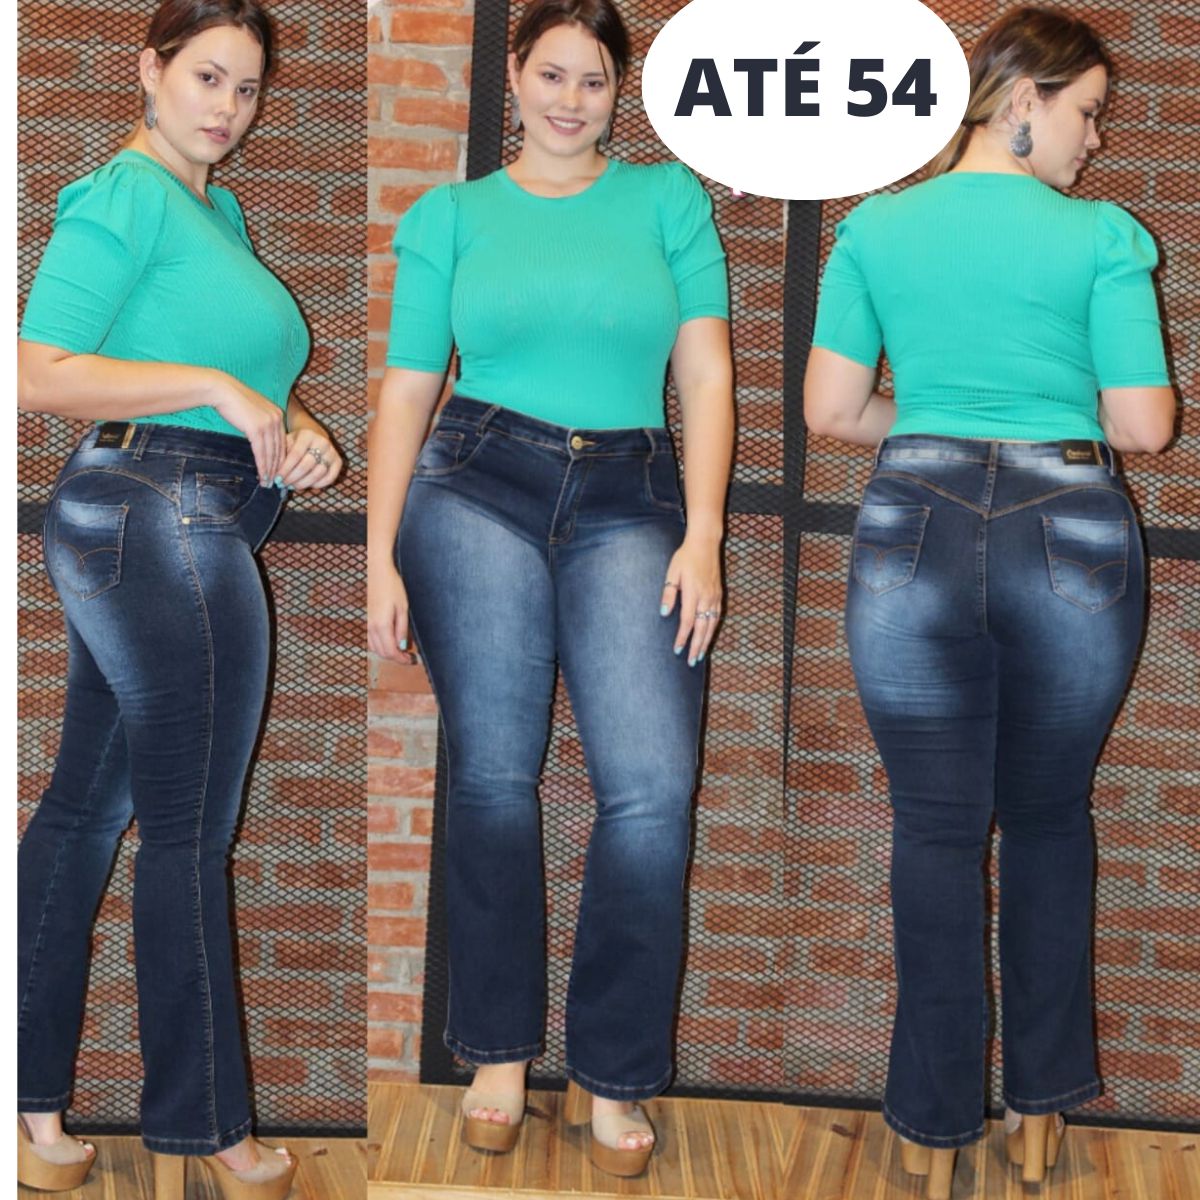 Calça Jeans De Cintura Alta - Site De Beleza E Moda